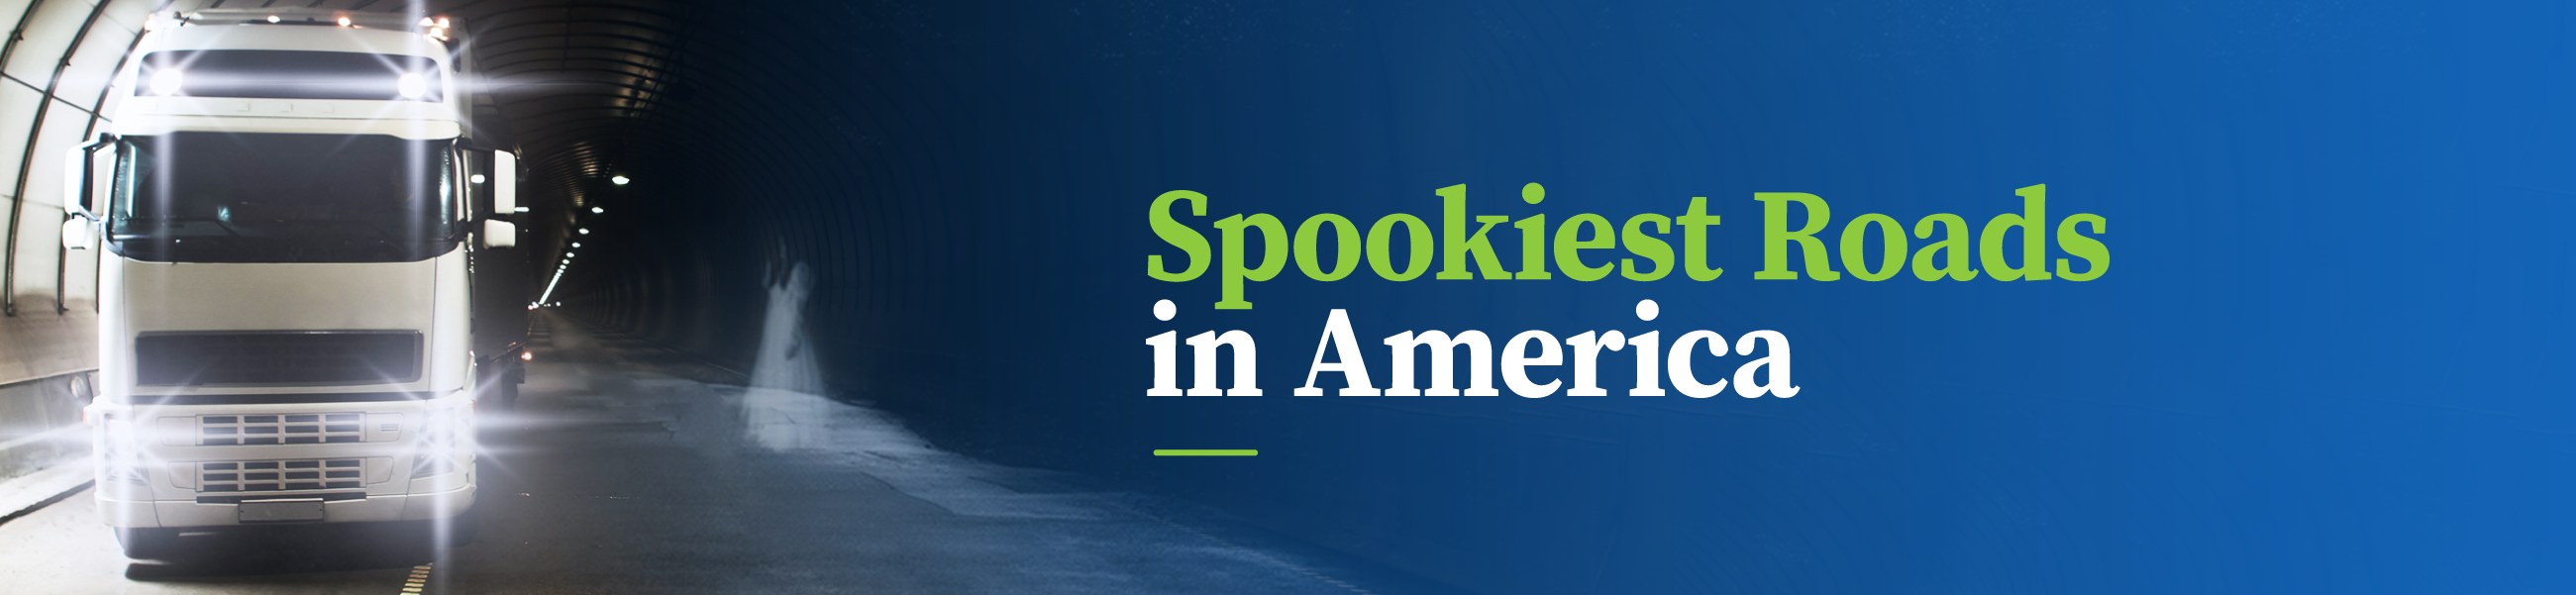 Header image spookiest roads in America